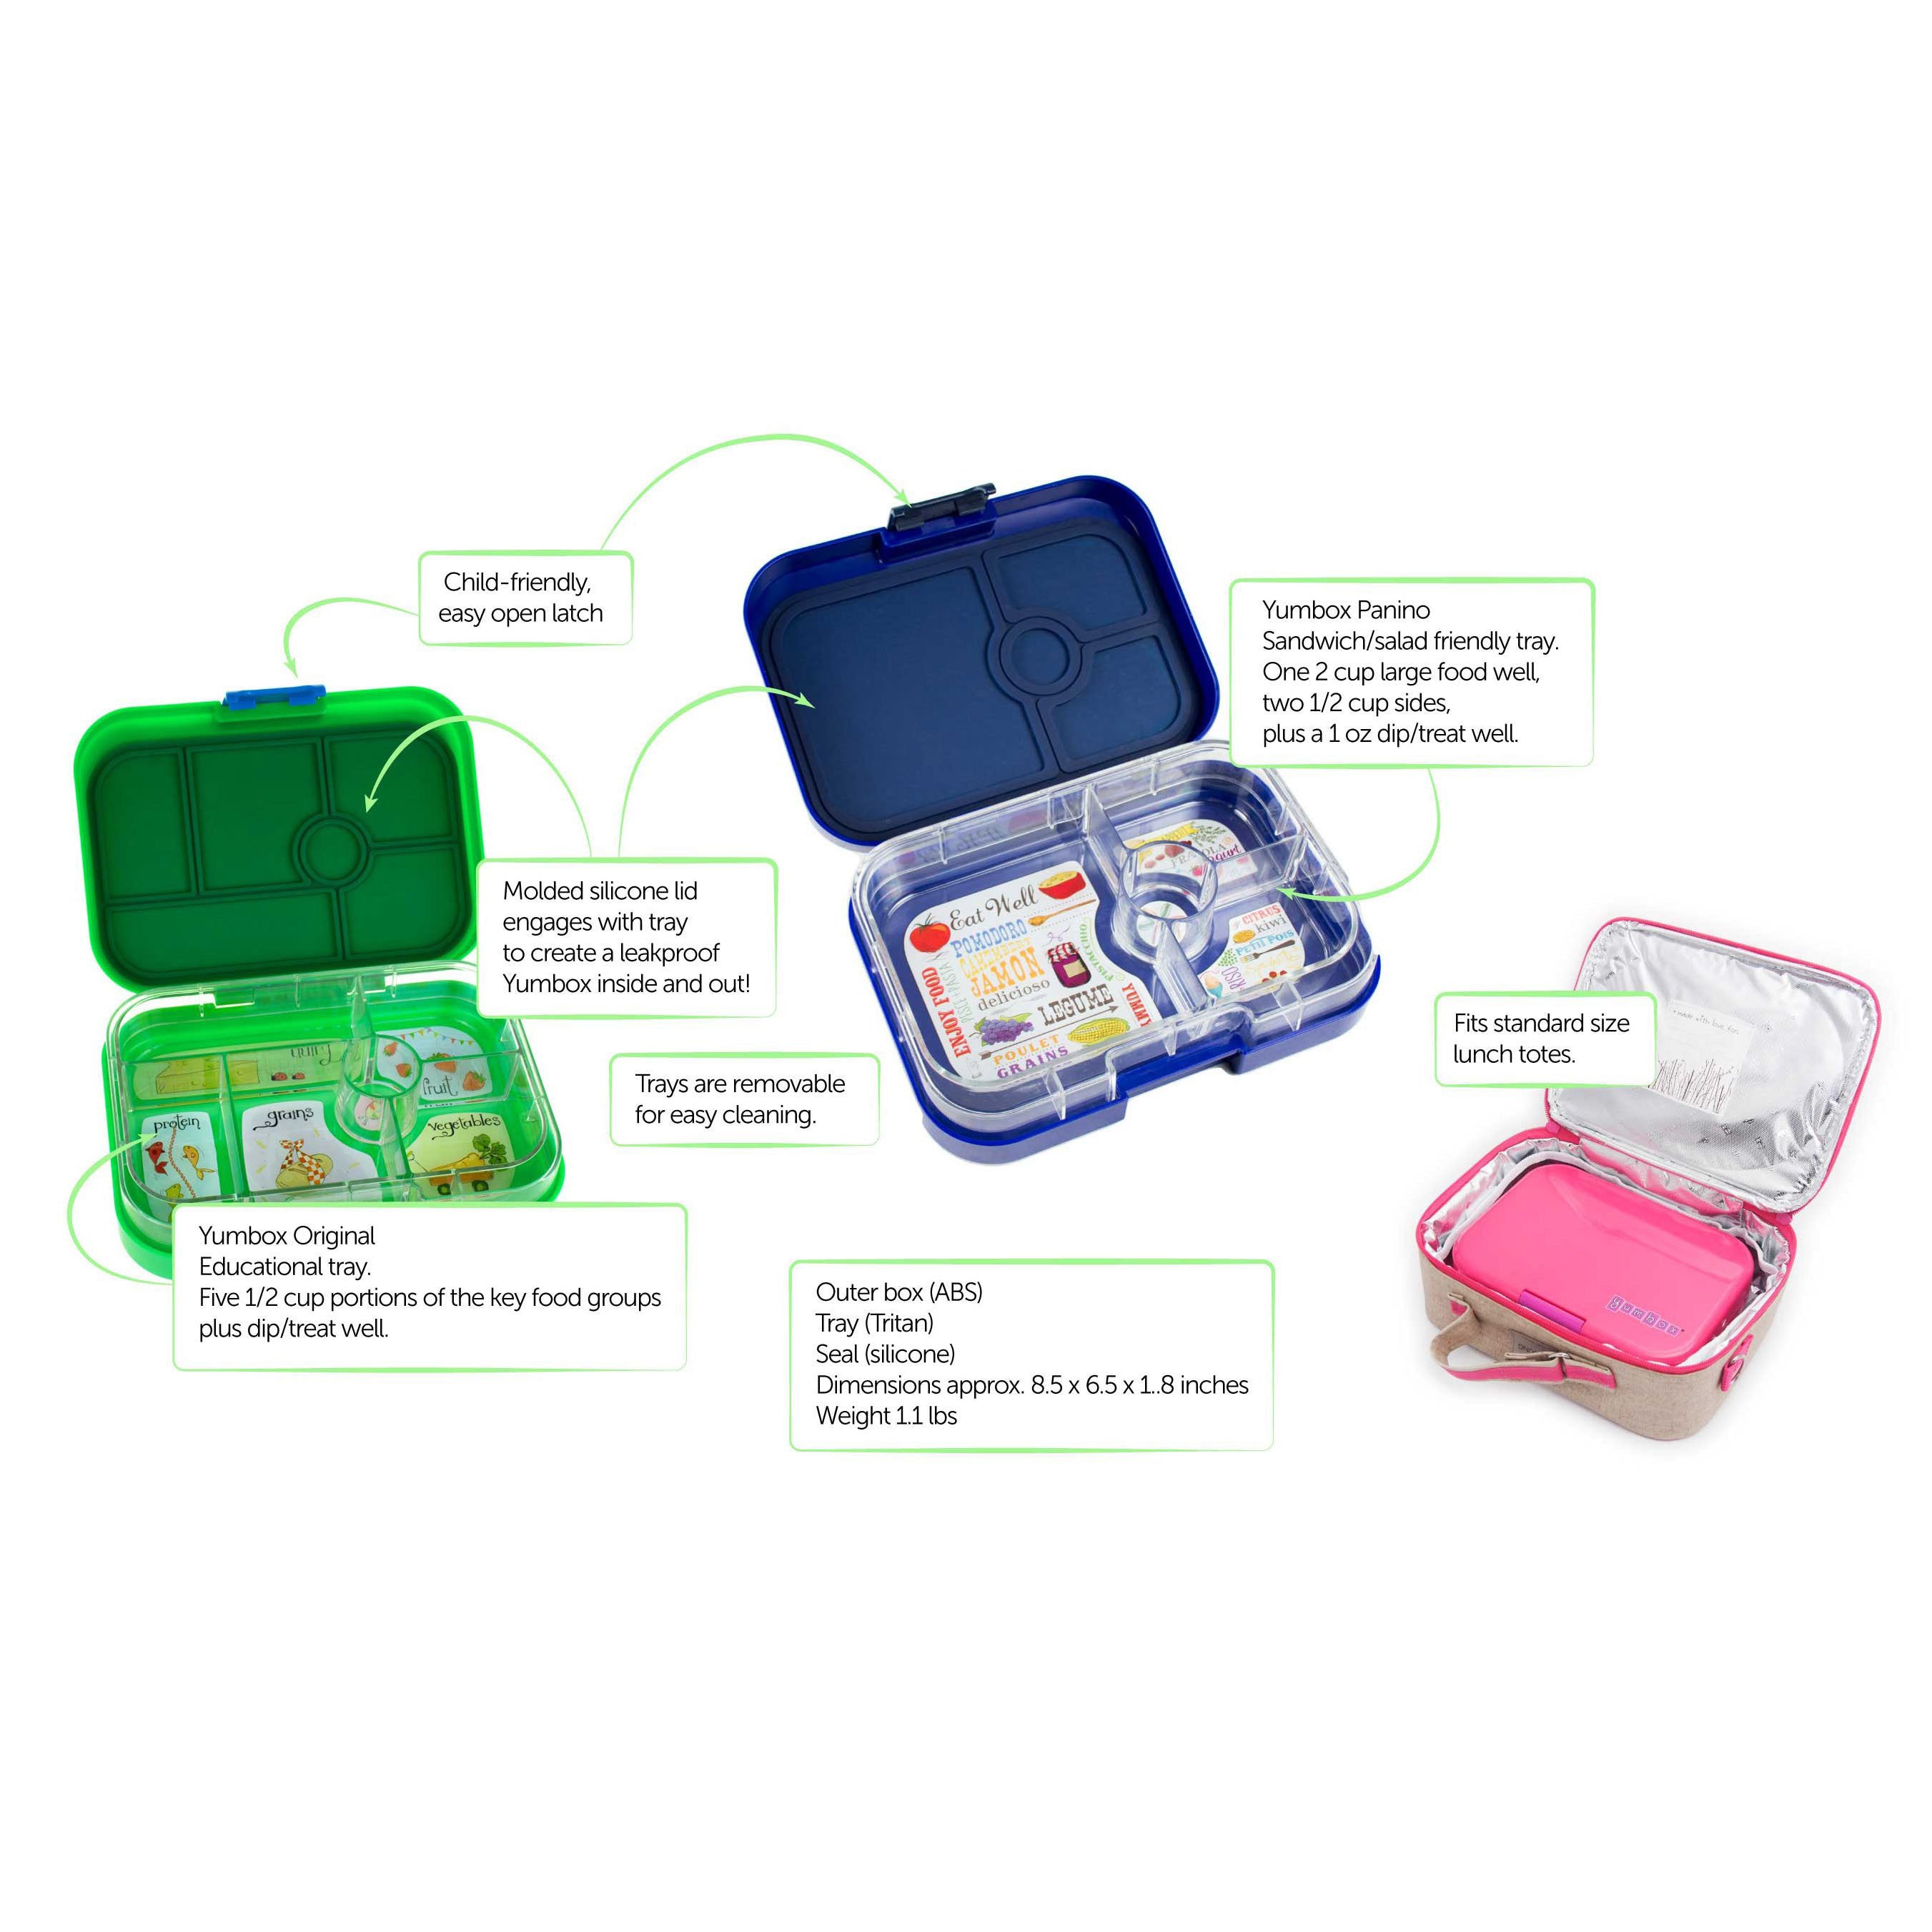 yumbox-panino-lotus-pink-4-compartment-lunch-box- (5)